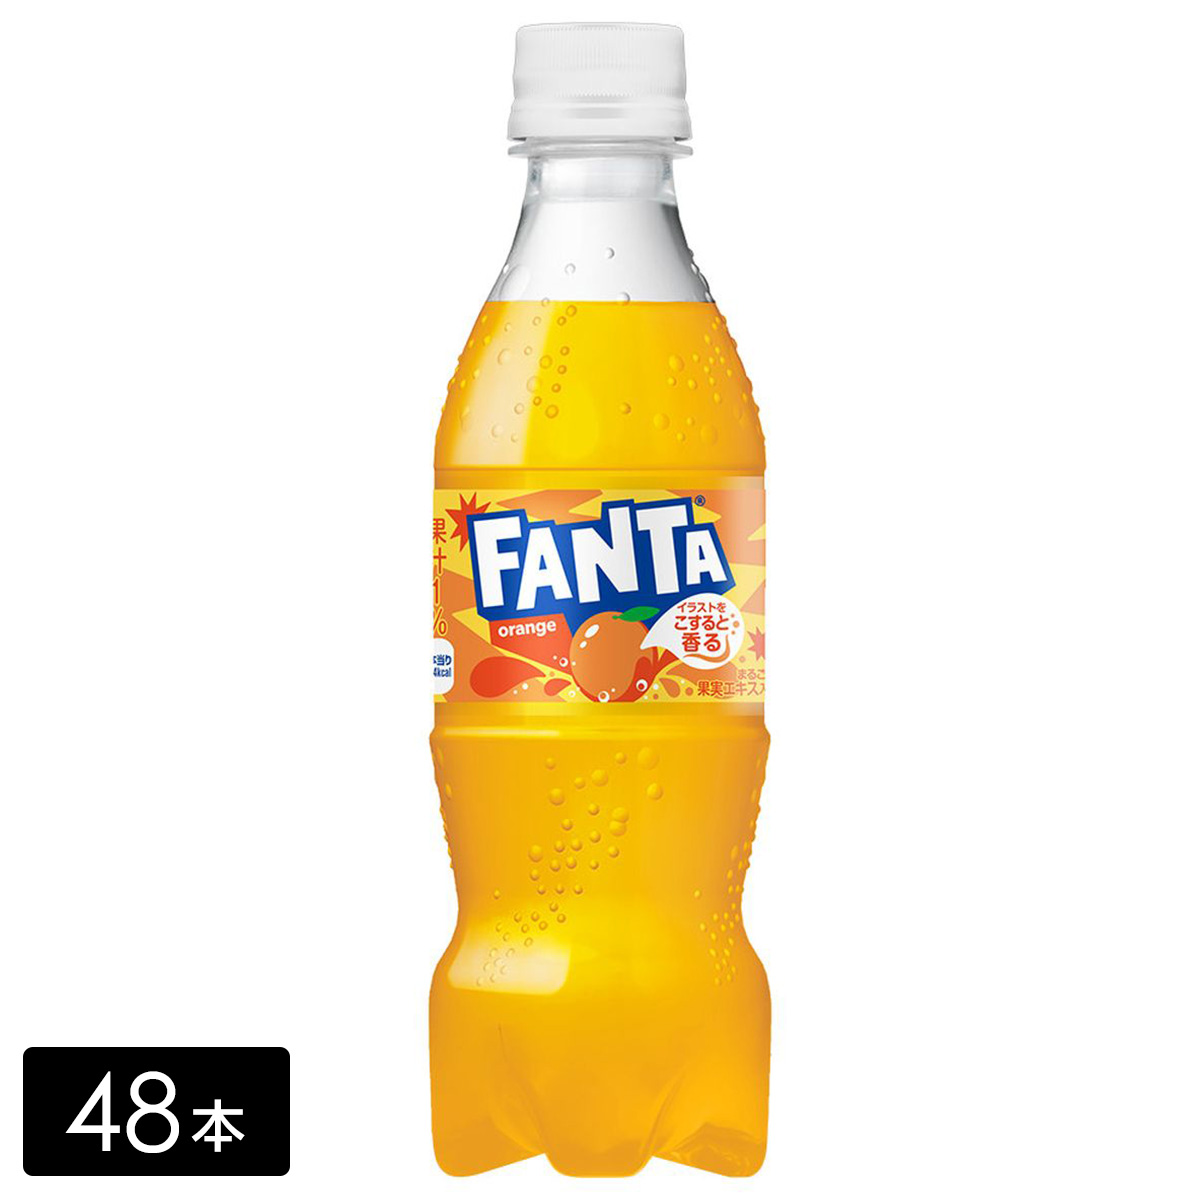 [送料無料]ファンタ オレンジ 350ml 48本(24本×2箱) 炭酸飲料 ペットボトル ケース売り まとめ買い